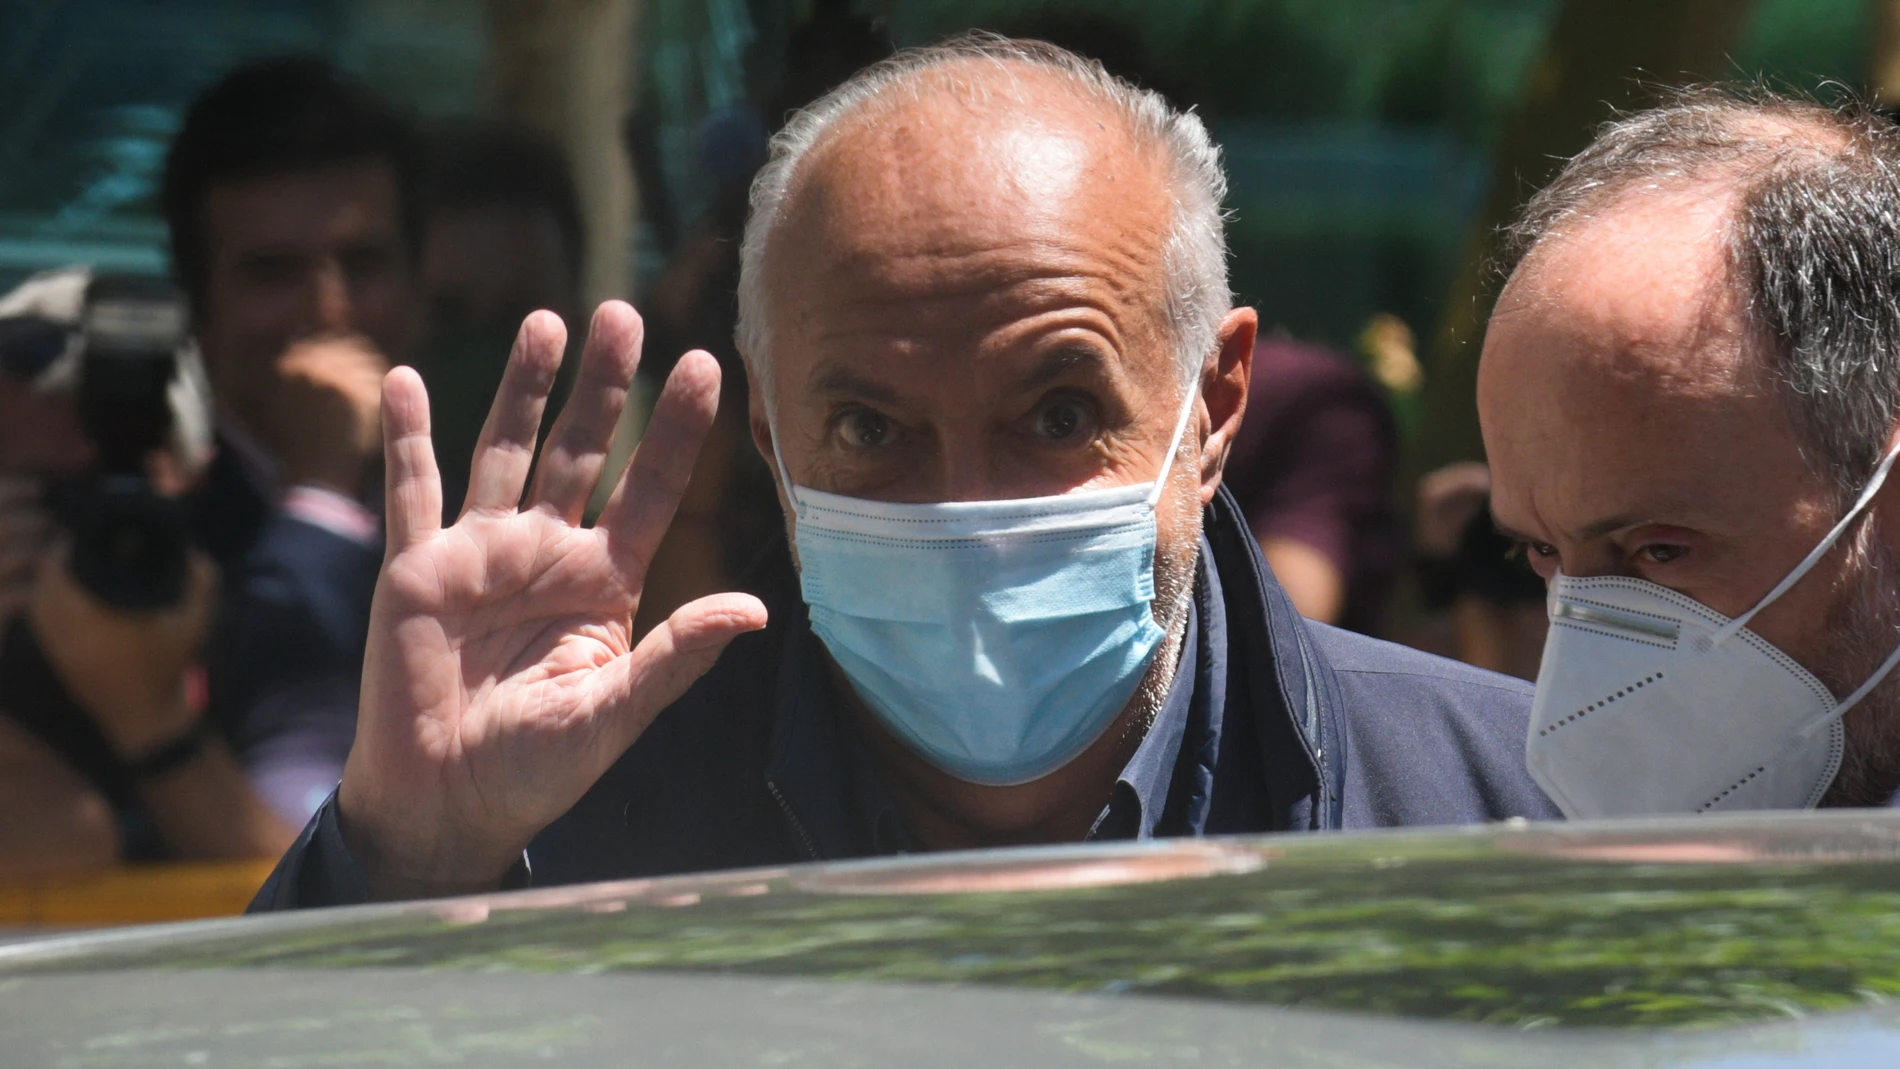 El productor televisivo José Luis Moreno sale de la Audiencia Nacional tras quedar en libertad el 1 de julio del pasado año